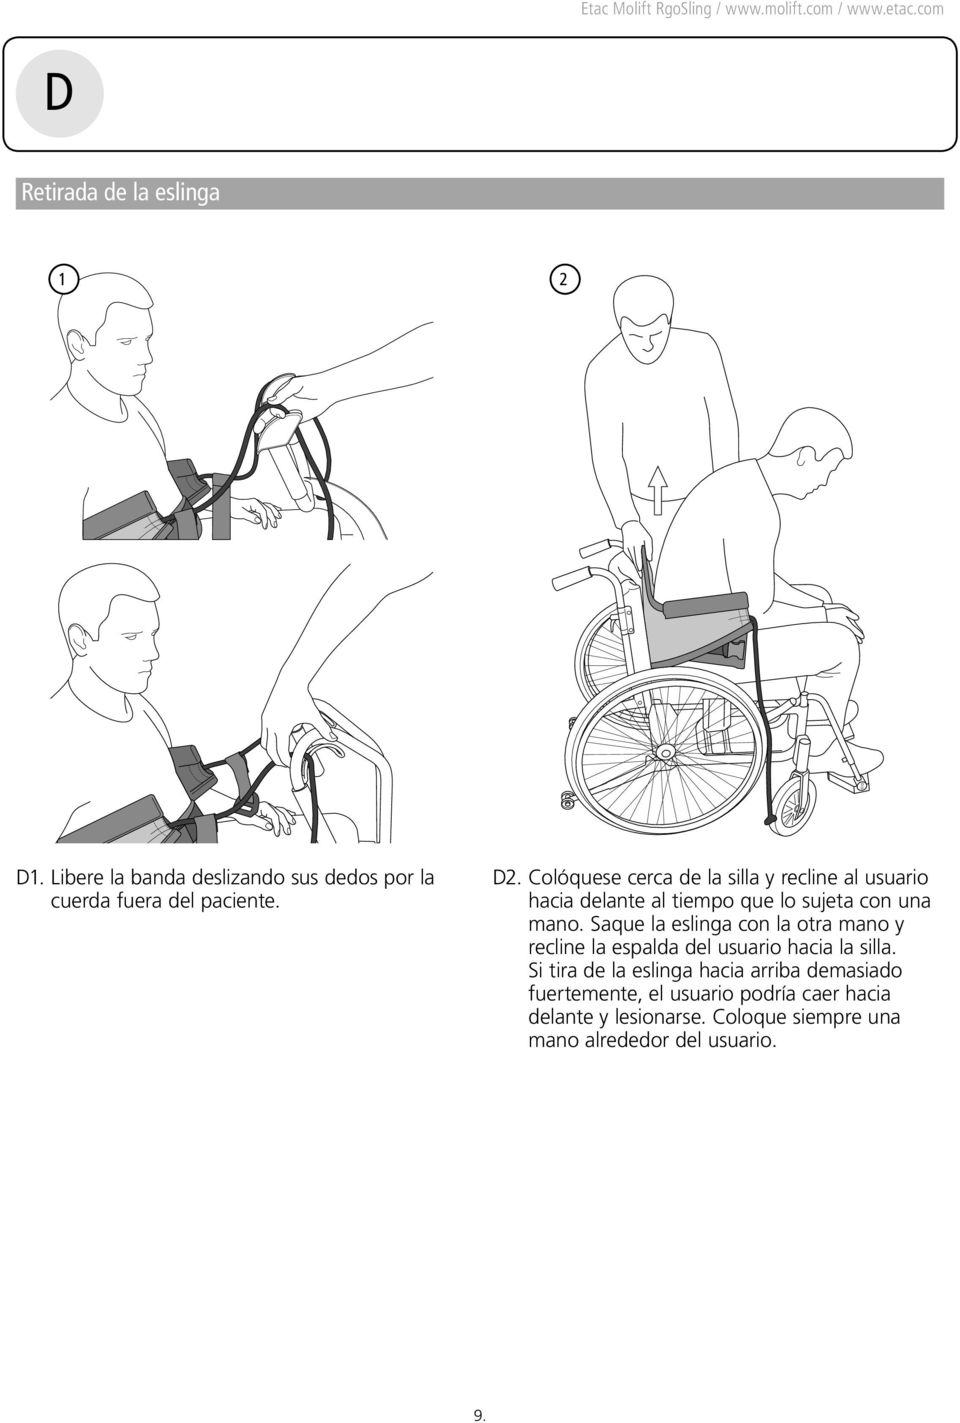 Saque la eslinga con la otra mano y recline la espalda del usuario hacia la silla.